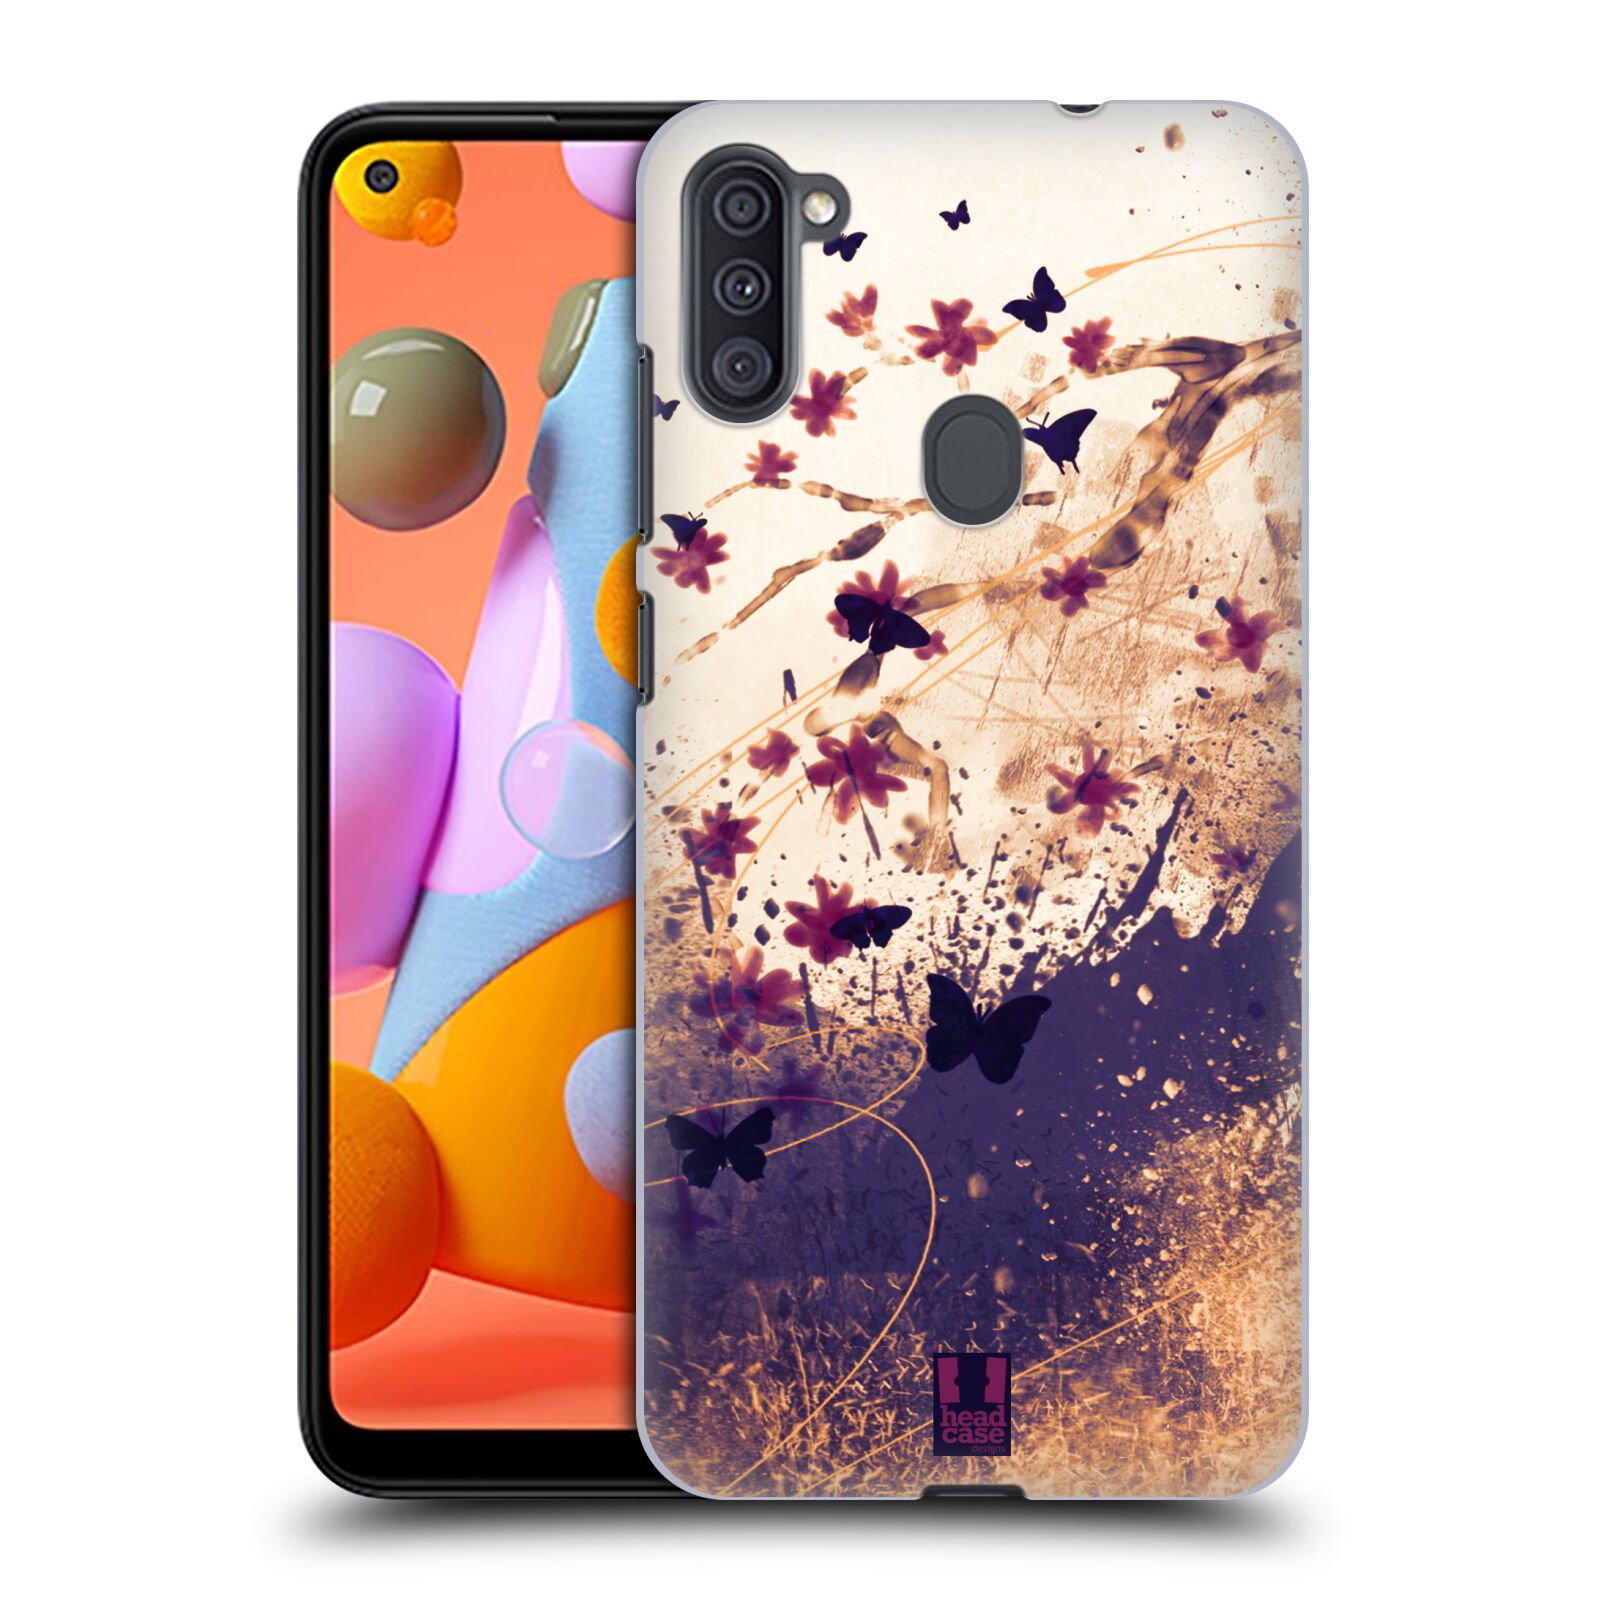 Zadní obal pro mobil Samsung Galaxy A11 - HEAD CASE - Barevné květy a motýlci